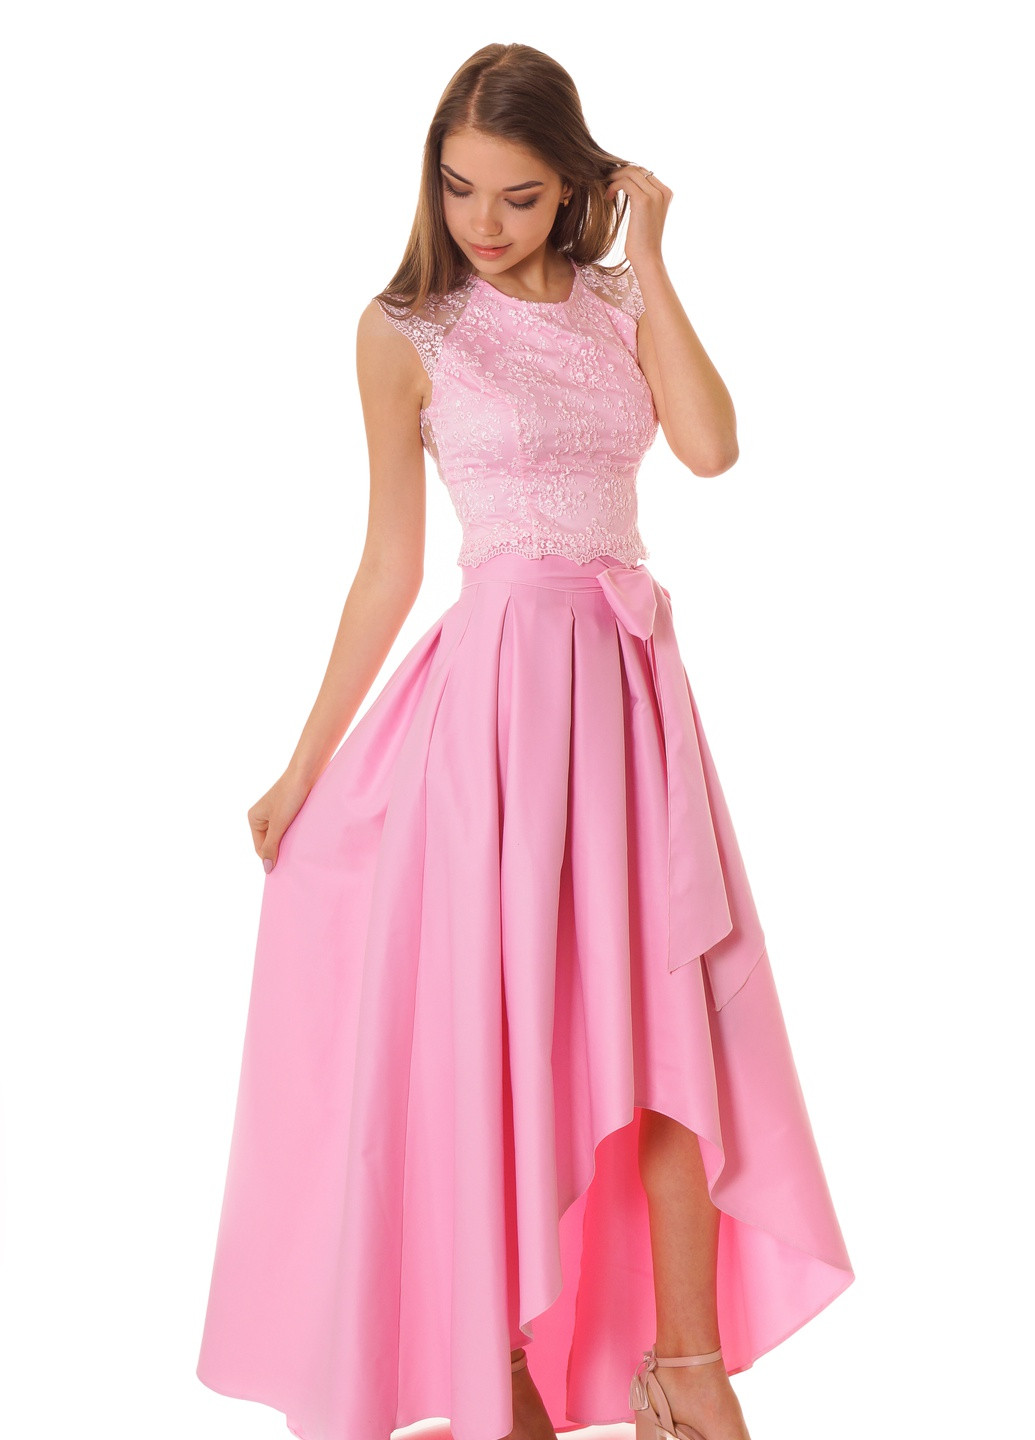 Юбочный костюм нарядного стиля розового цвета ITSMINE юбочный однотонный розовый вечерний кружево, полиэстер, хлопок